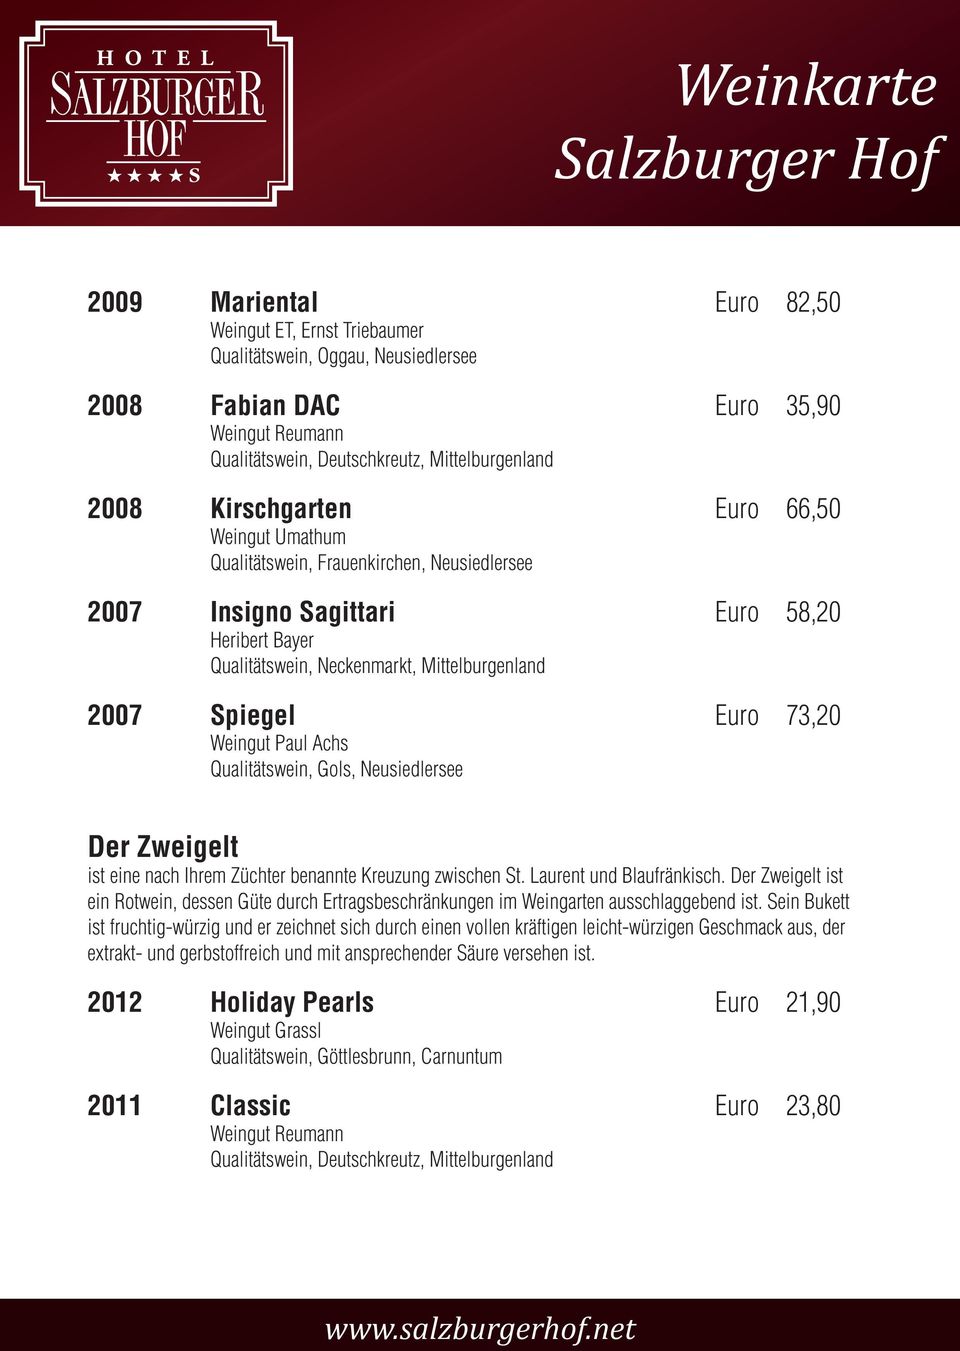 Paul Achs Qualitätswein, Gols, Neusiedlersee Der Zweigelt ist eine nach Ihrem Züchter benannte Kreuzung zwischen St. Laurent und Blaufränkisch.